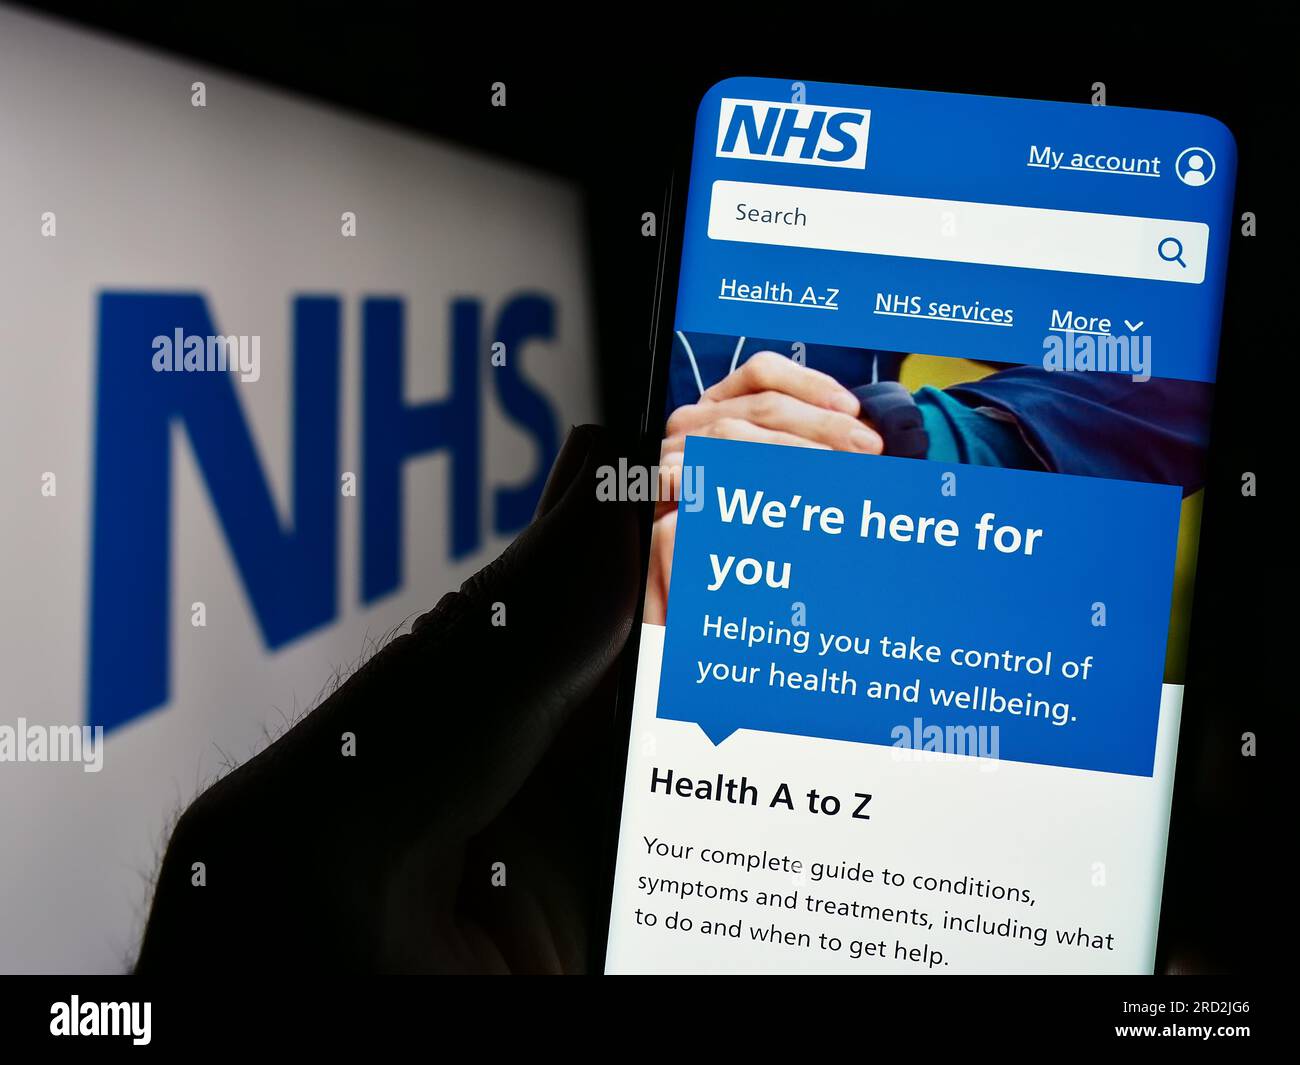 Persona che tiene lo smartphone con la pagina web del British National Health Service (NHS) sullo schermo davanti al logo. Concentrarsi sul centro del display del telefono. Foto Stock